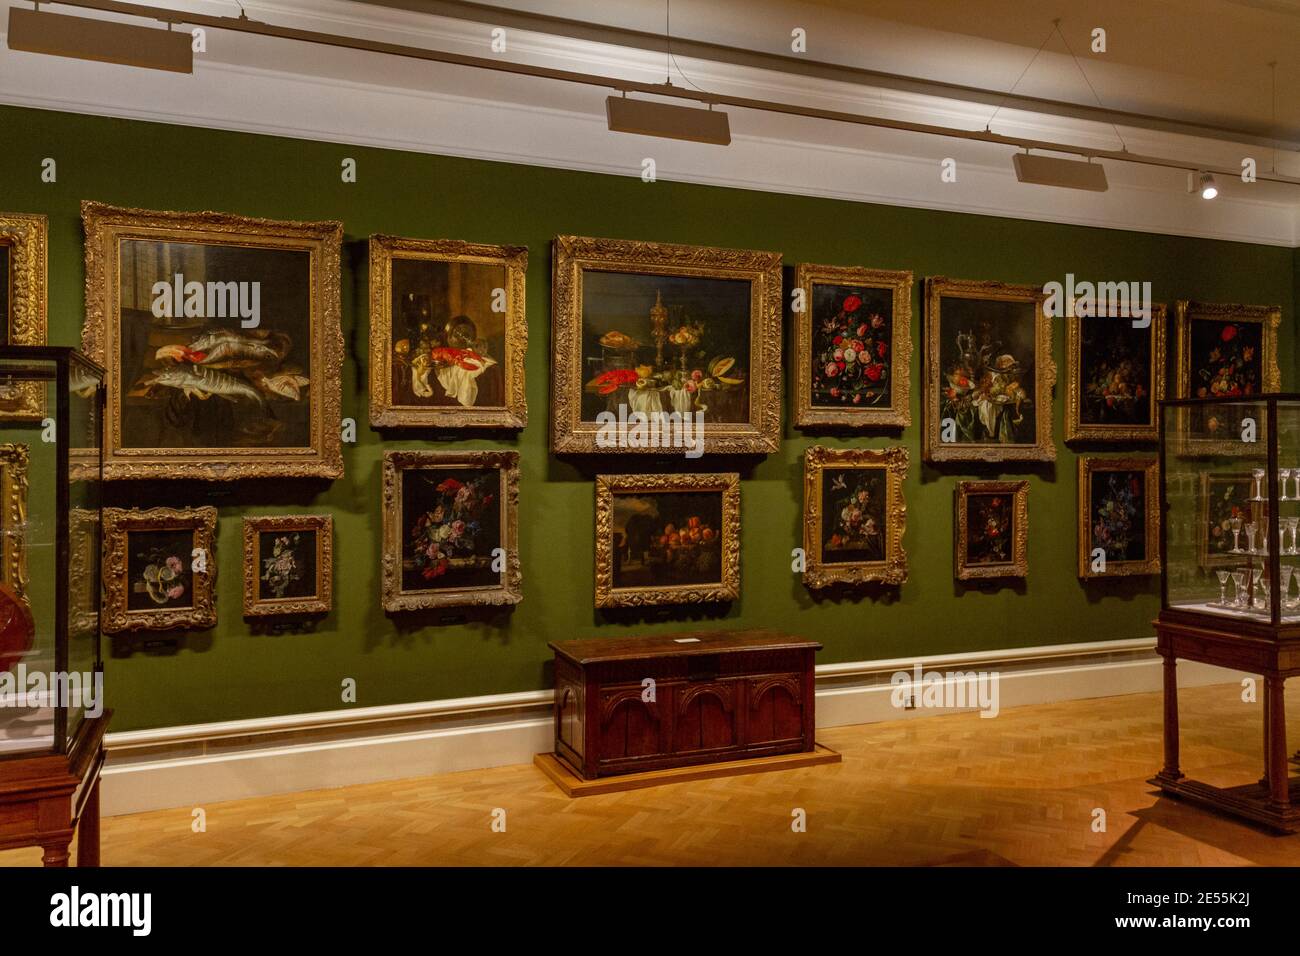 Vue générale des peintures hollandaises et flamandes, musée Ashmolean, musée d'art et d'archéologie de l'Université d'Oxford, Oxford UK. Banque D'Images